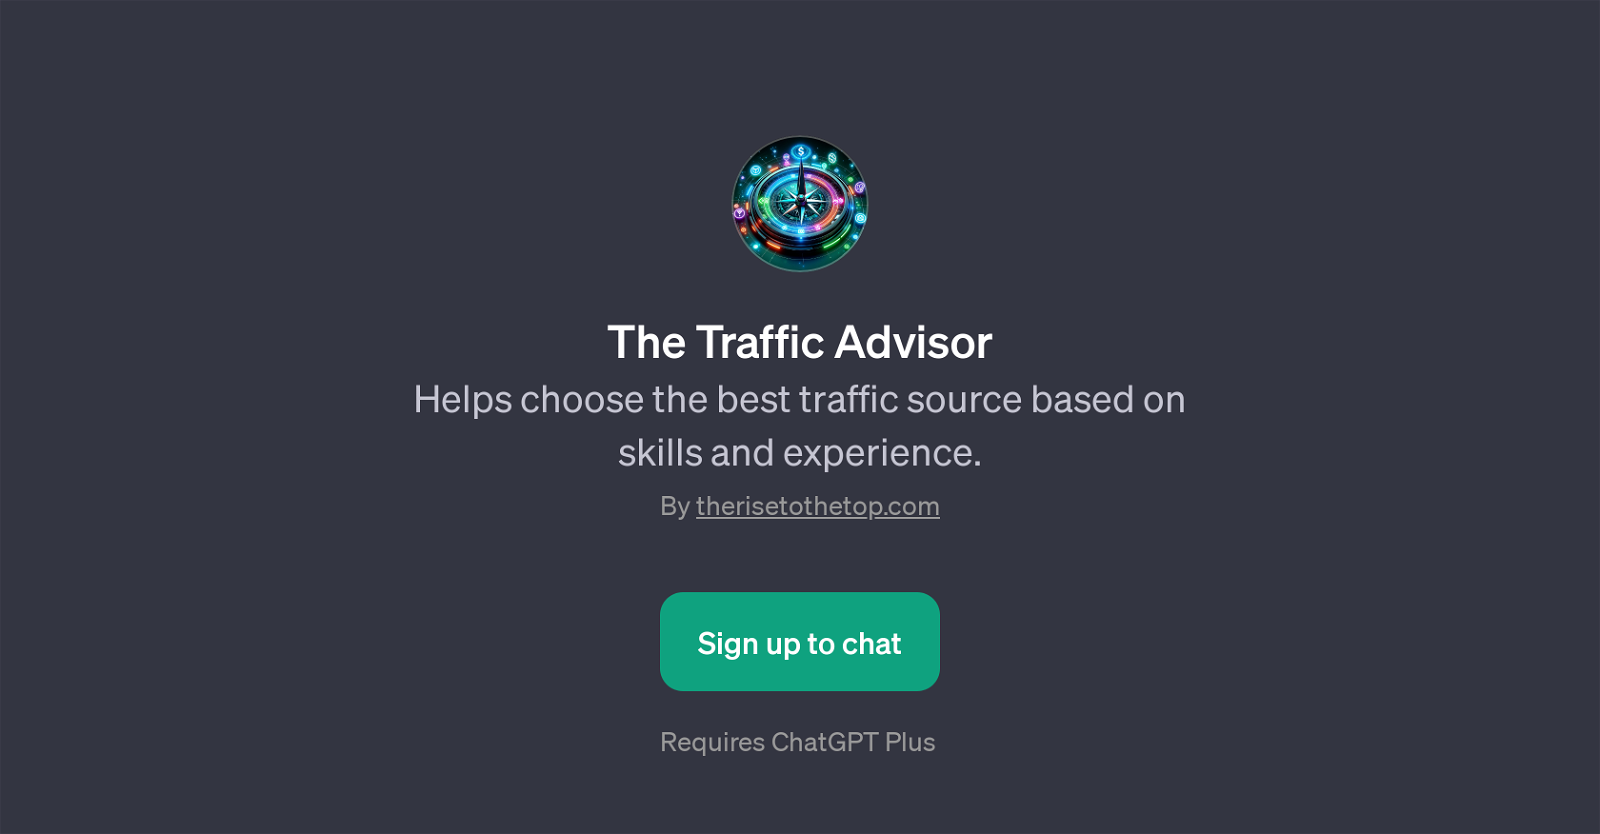 The Traffic Advisor website